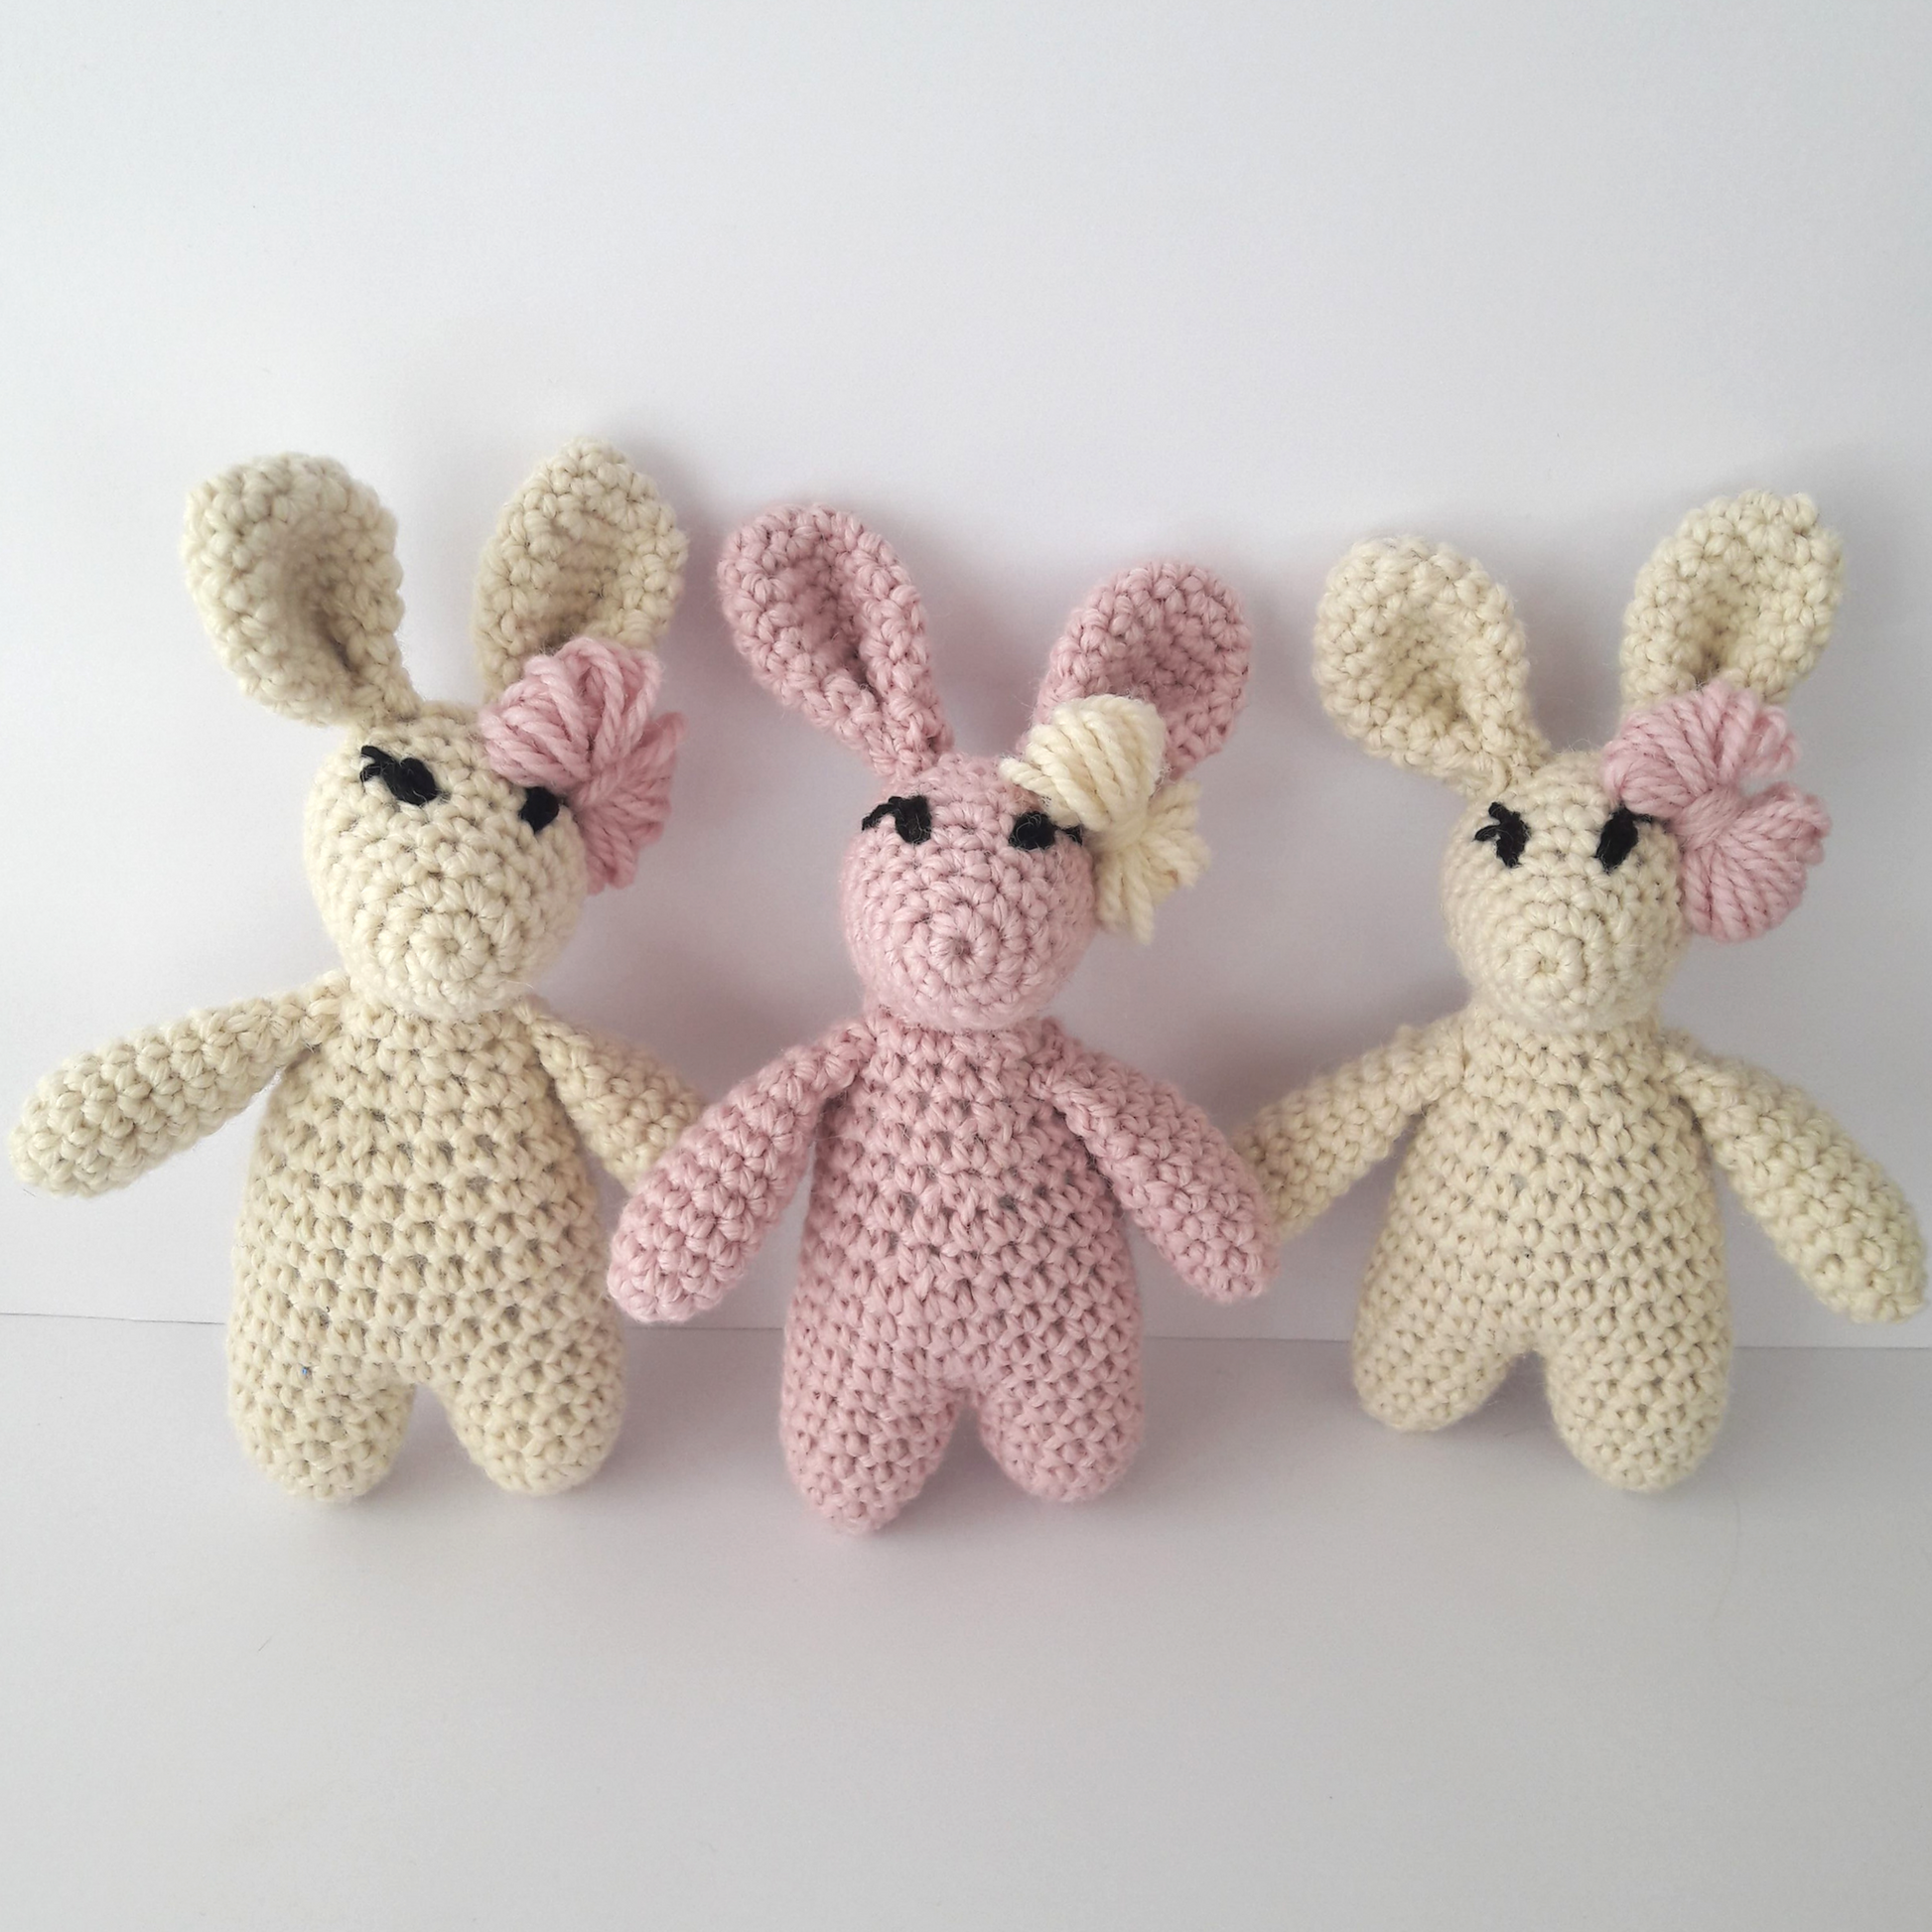 Pink Crochet Bunnies made from Crochet Kit